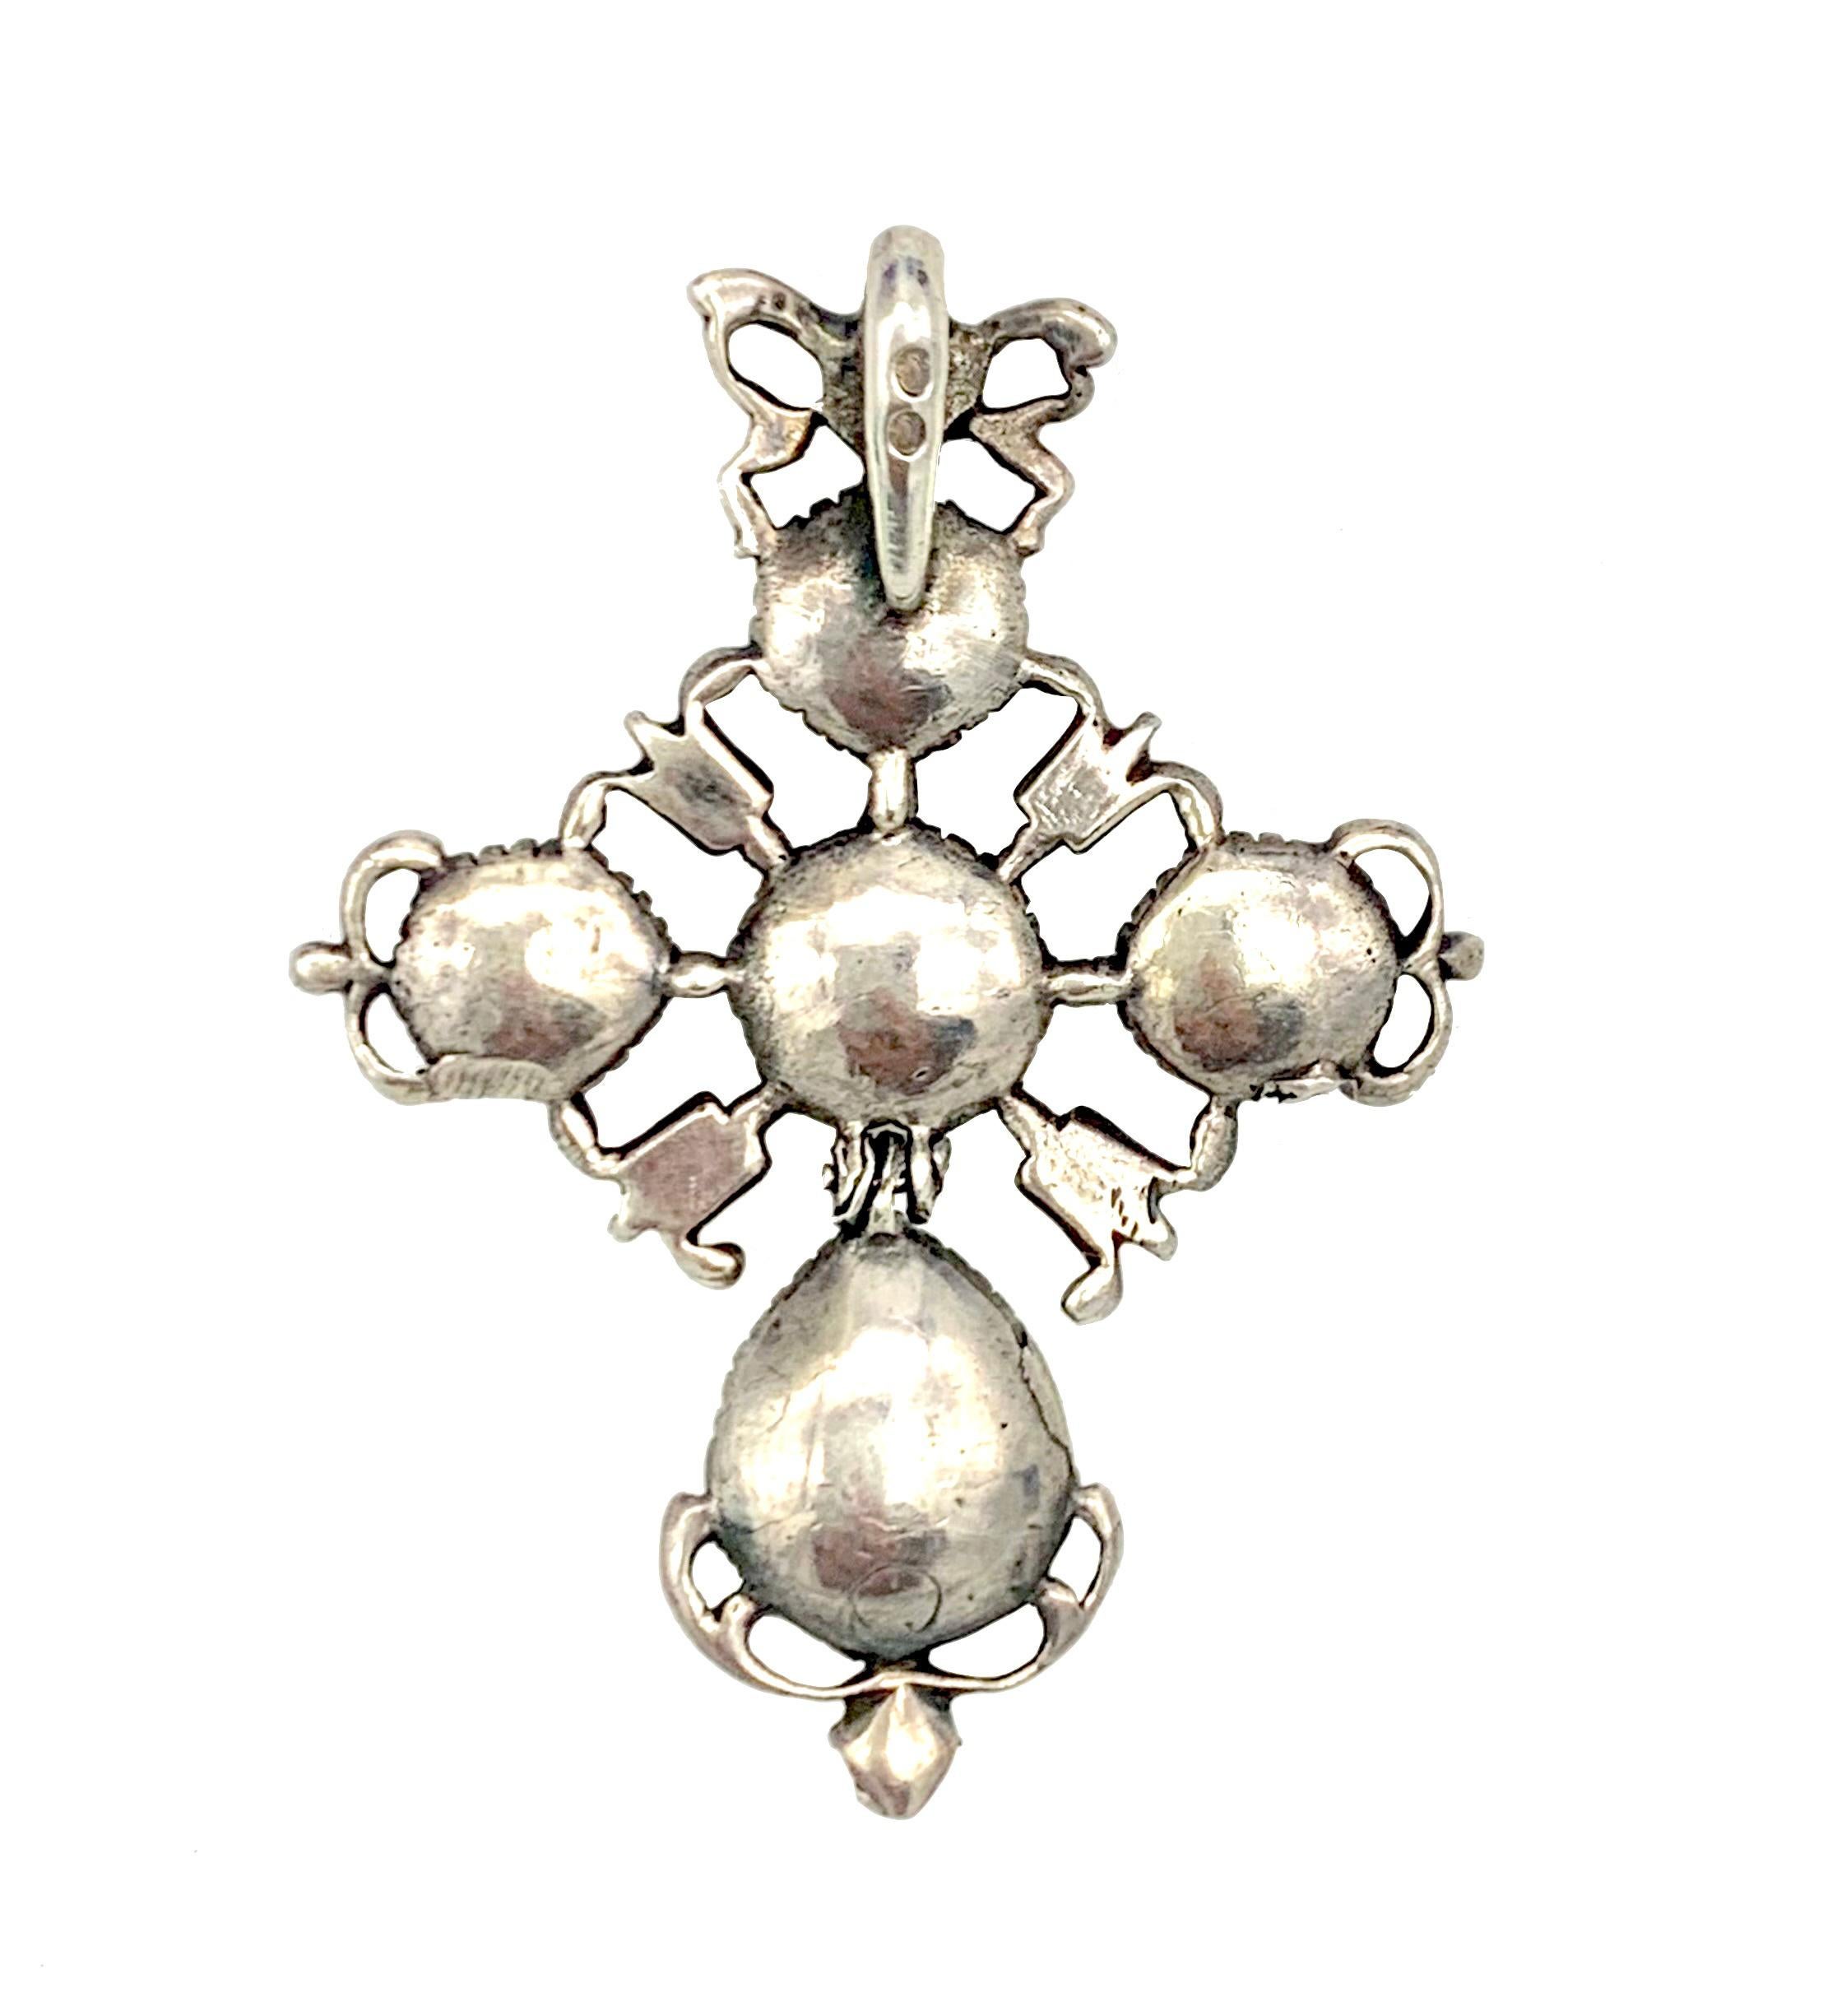 Dieses schöne und originelle Silberkreuz wurde in der zweiten Hälfte des 18. Jahrhunderts, in den 1770er Jahren, handgefertigt. Das Schmuckstück ist mit rosa Diamanten aus alten Minen in geschlossenen Fassungen besetzt. An einer bogenförmigen